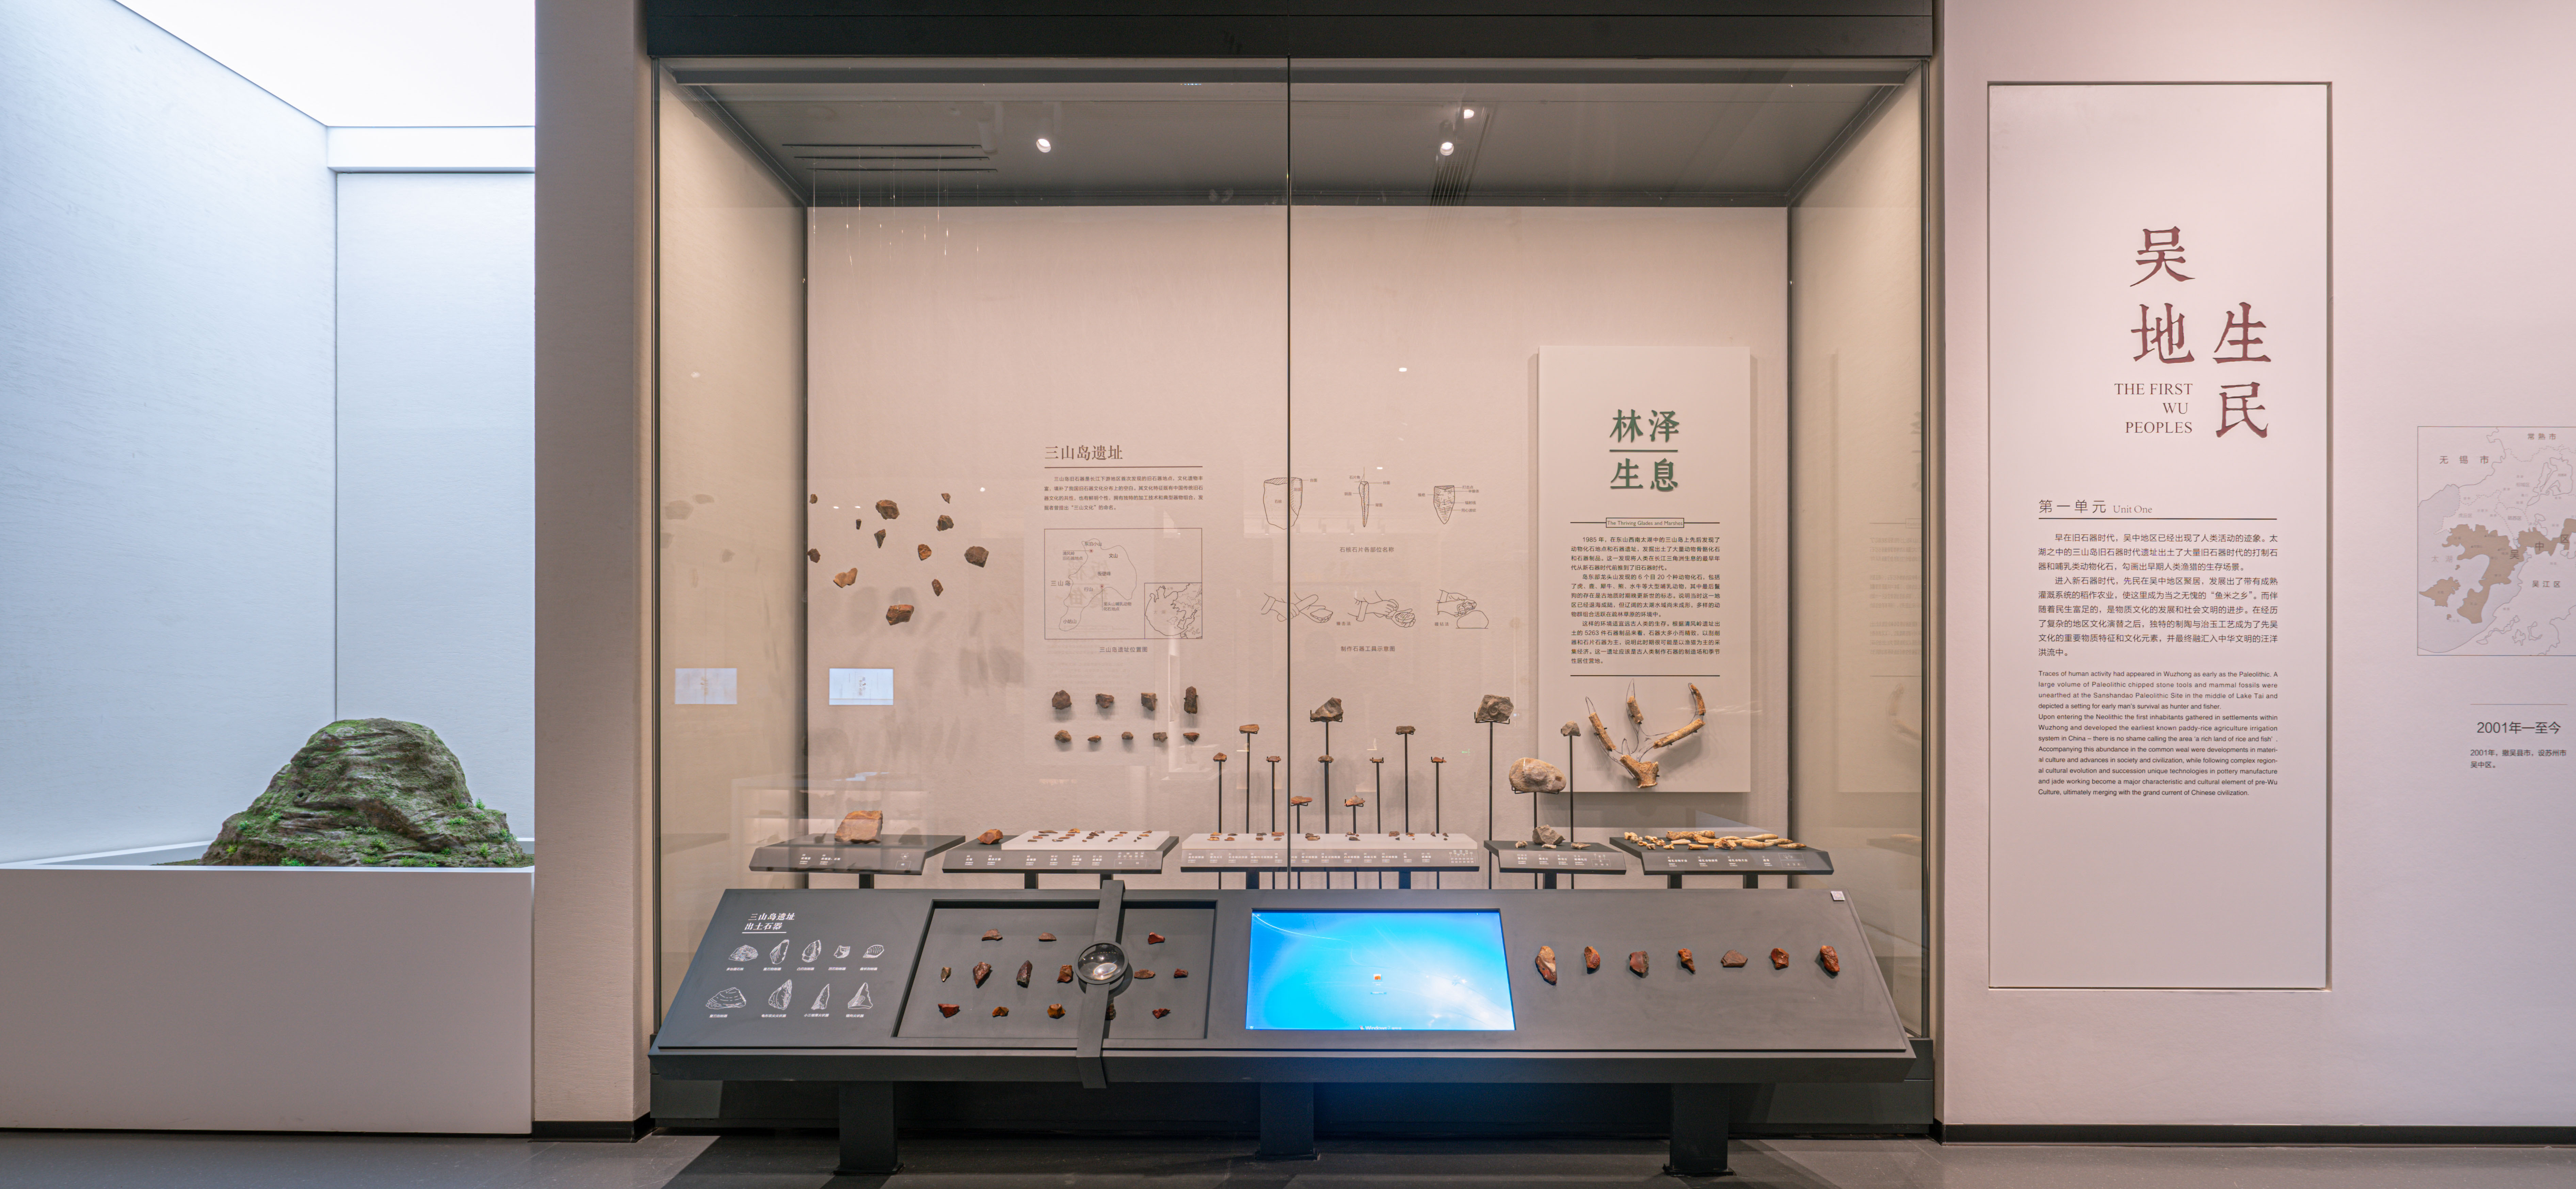 吴中博物馆的设计特点图片